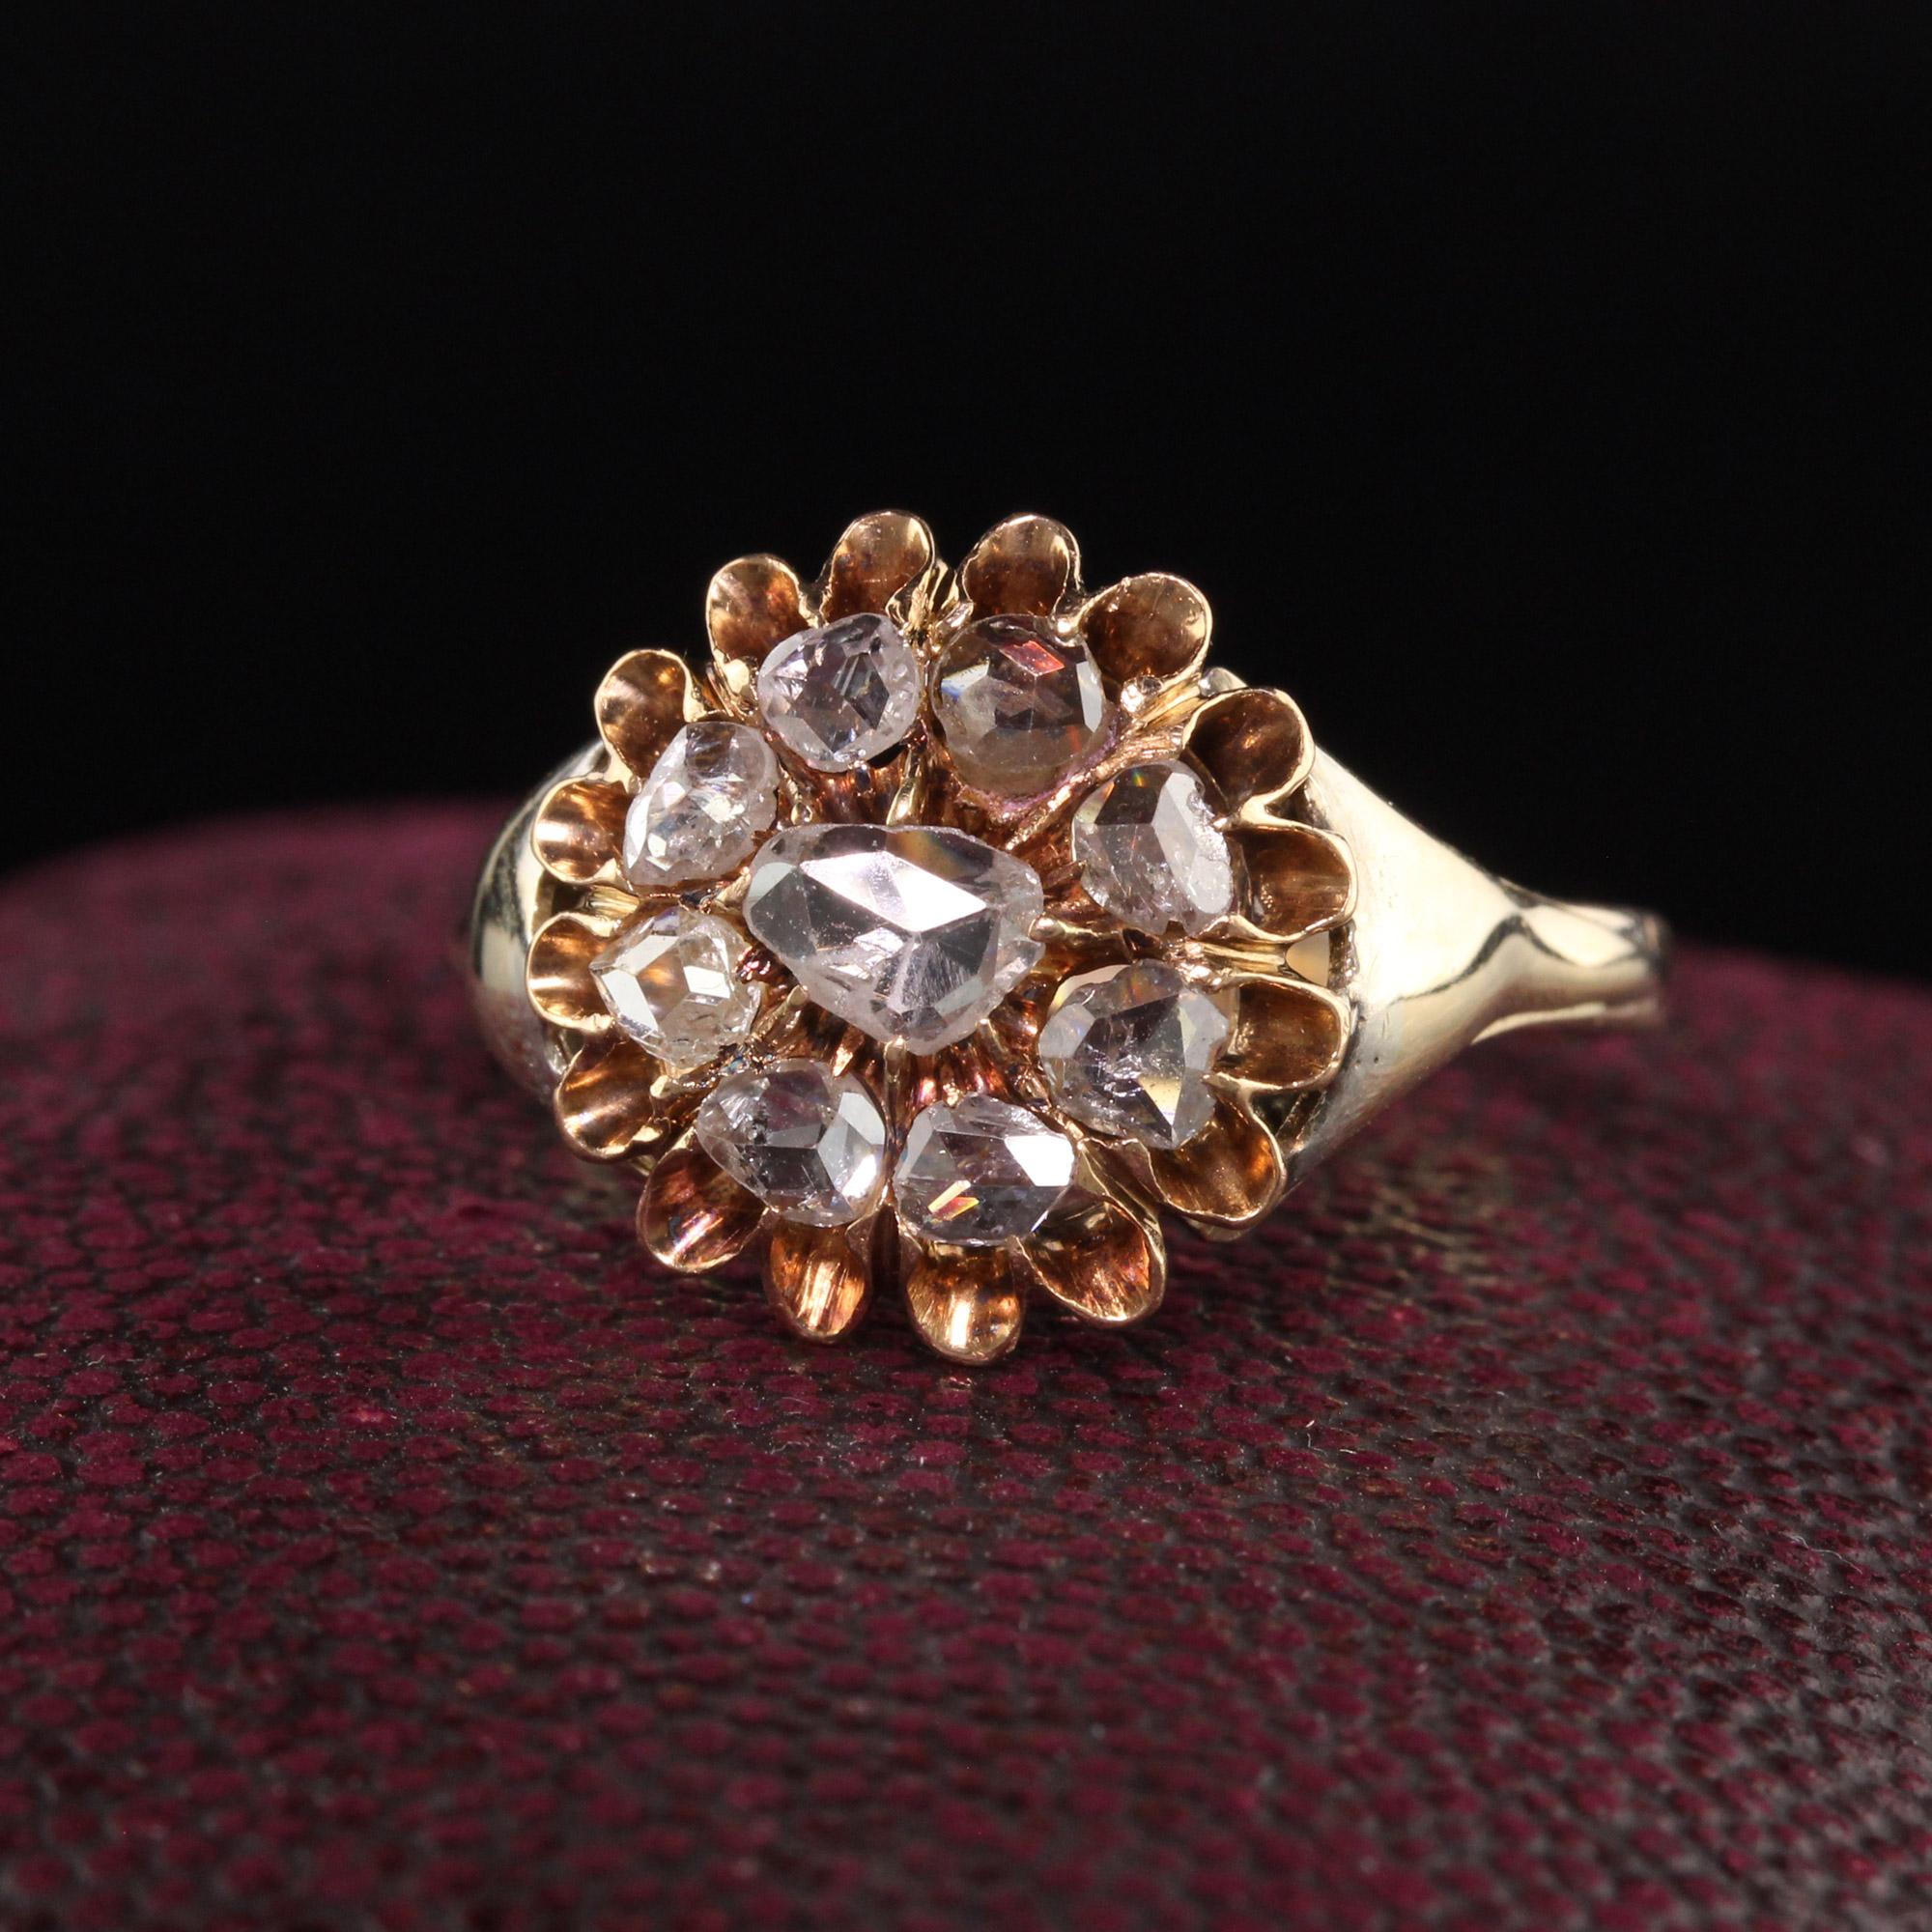 Schöne antike viktorianische 14K Gelbgold Rose Cut Diamond Cluster Ring. Dieser herrliche Ring hat wunderschön geschliffene Diamanten im Rosenschliff in einem Cluster-Design und sitzt tief am Finger.

Artikel #R1063

Metall: 14K Gelbgold

Gewicht: 4